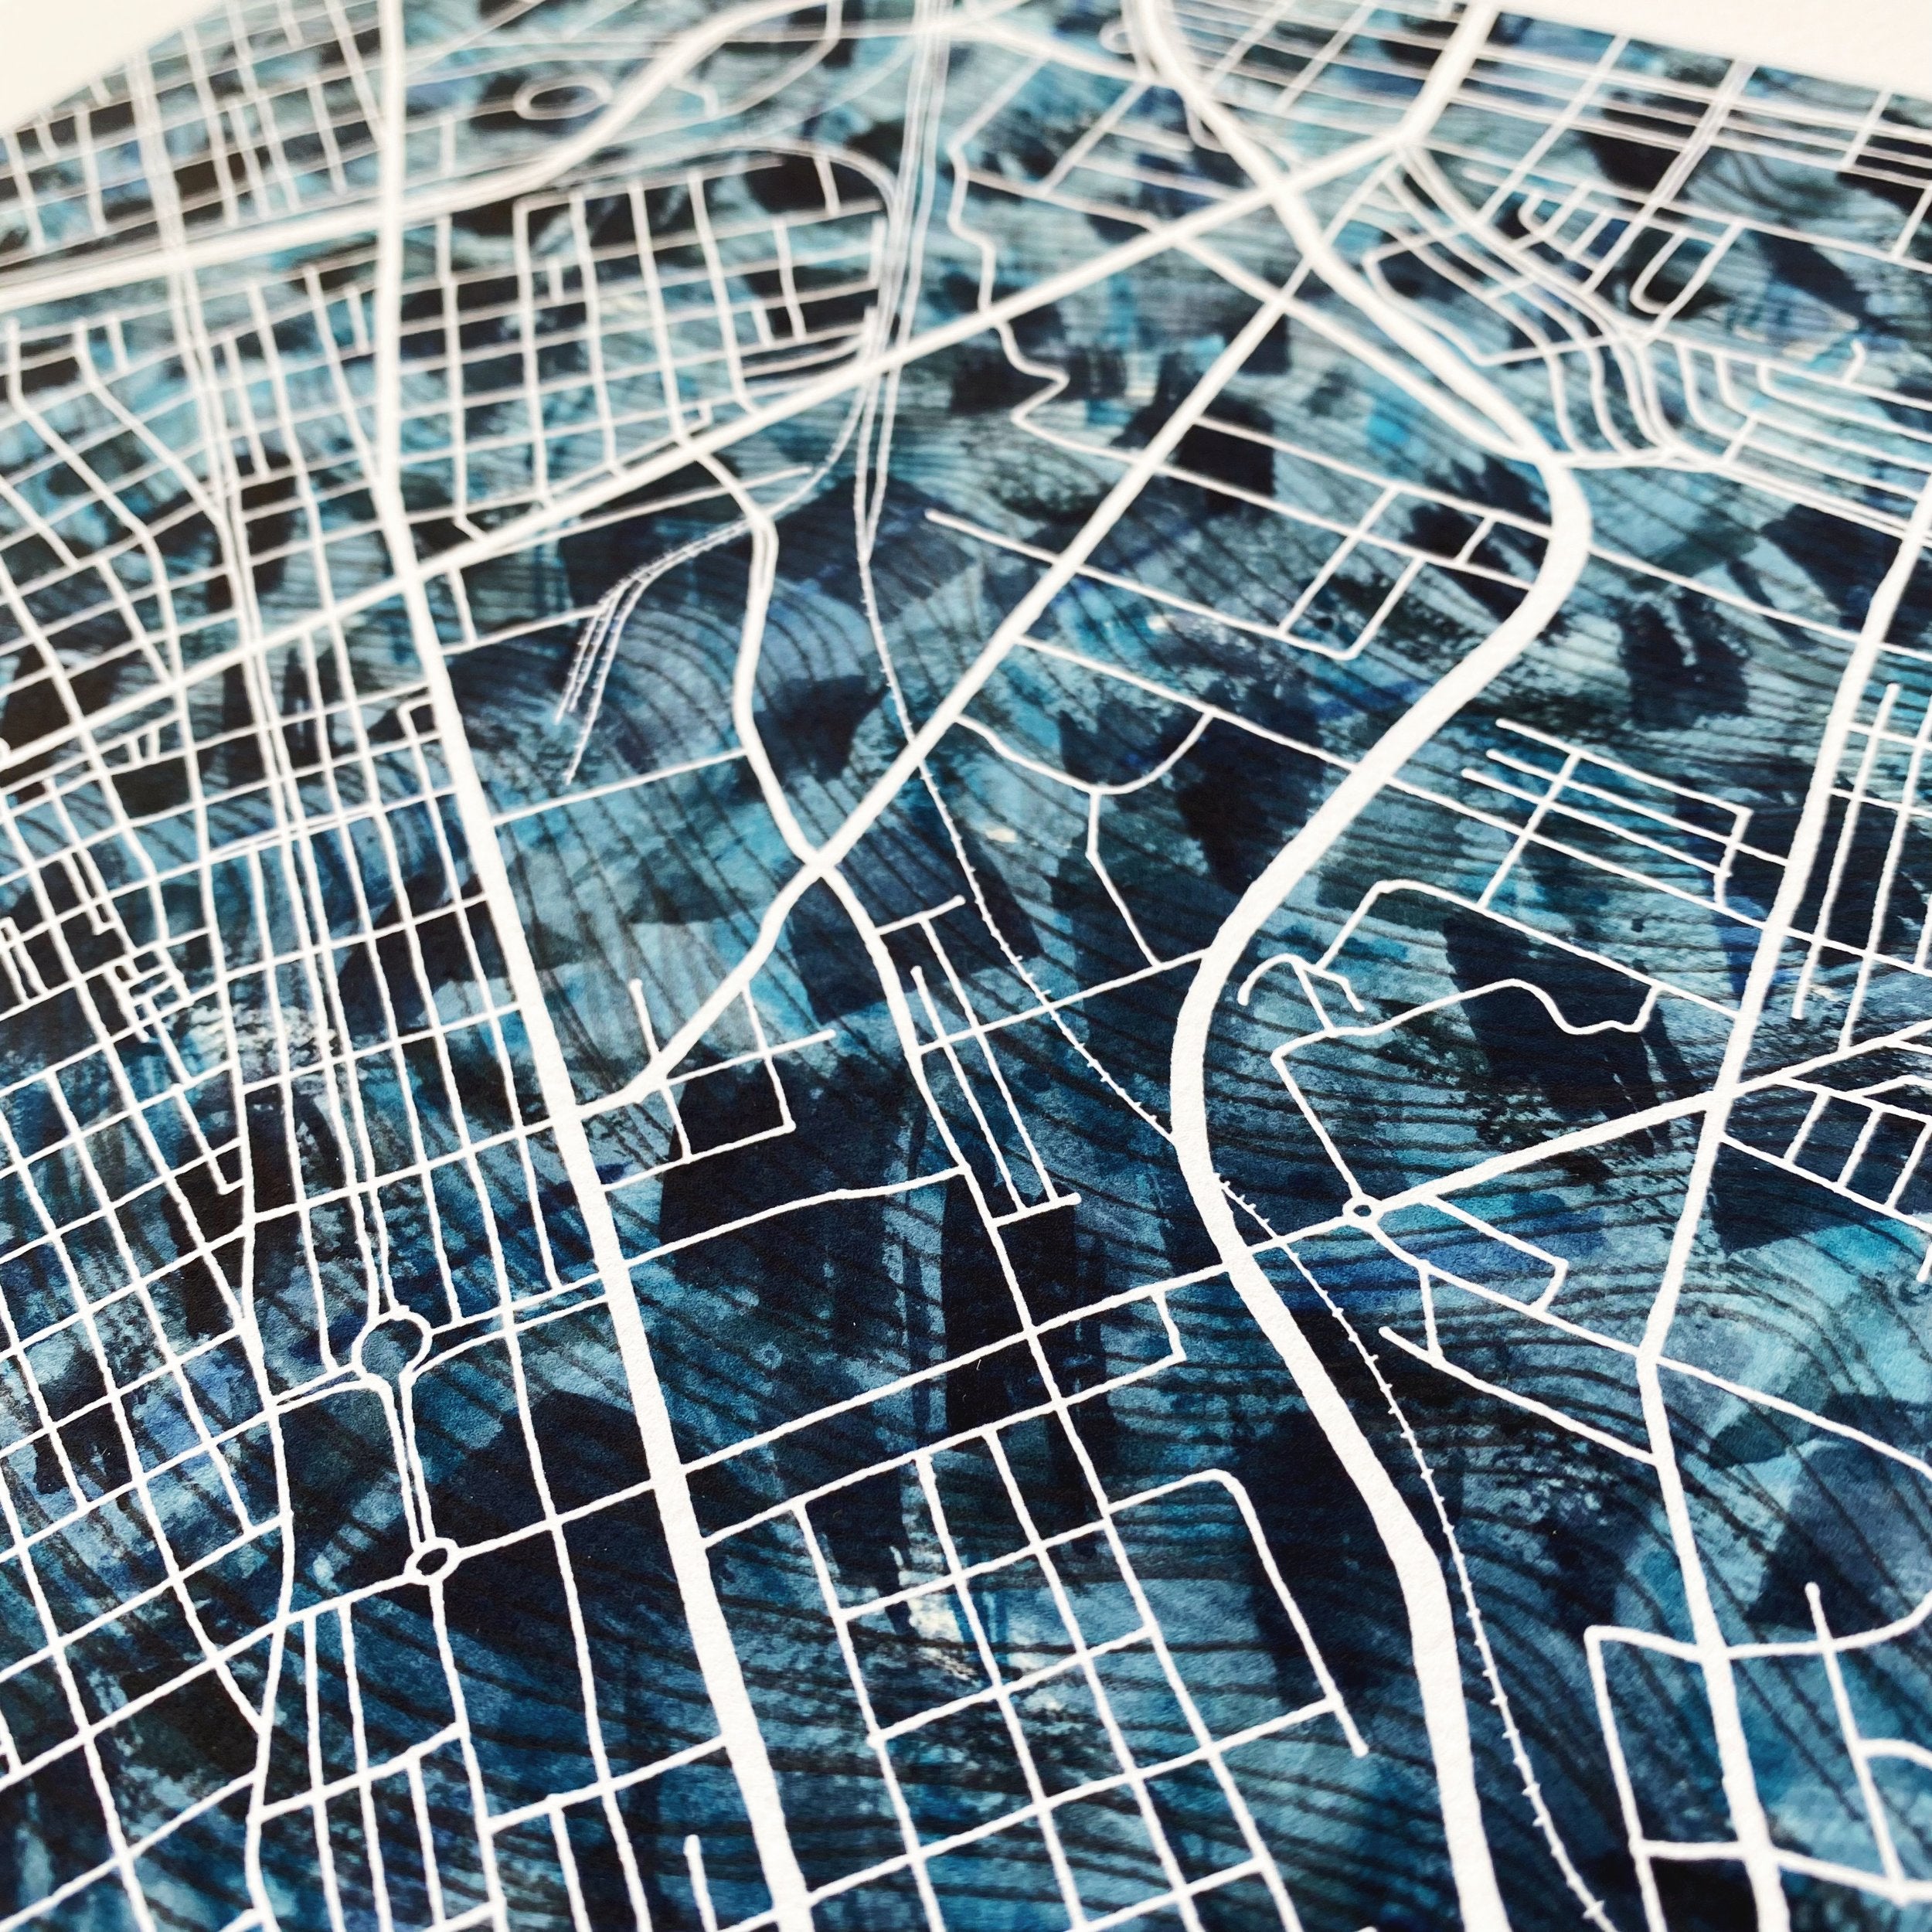 RICHMOND Urban Fabrics City Map: PRINT